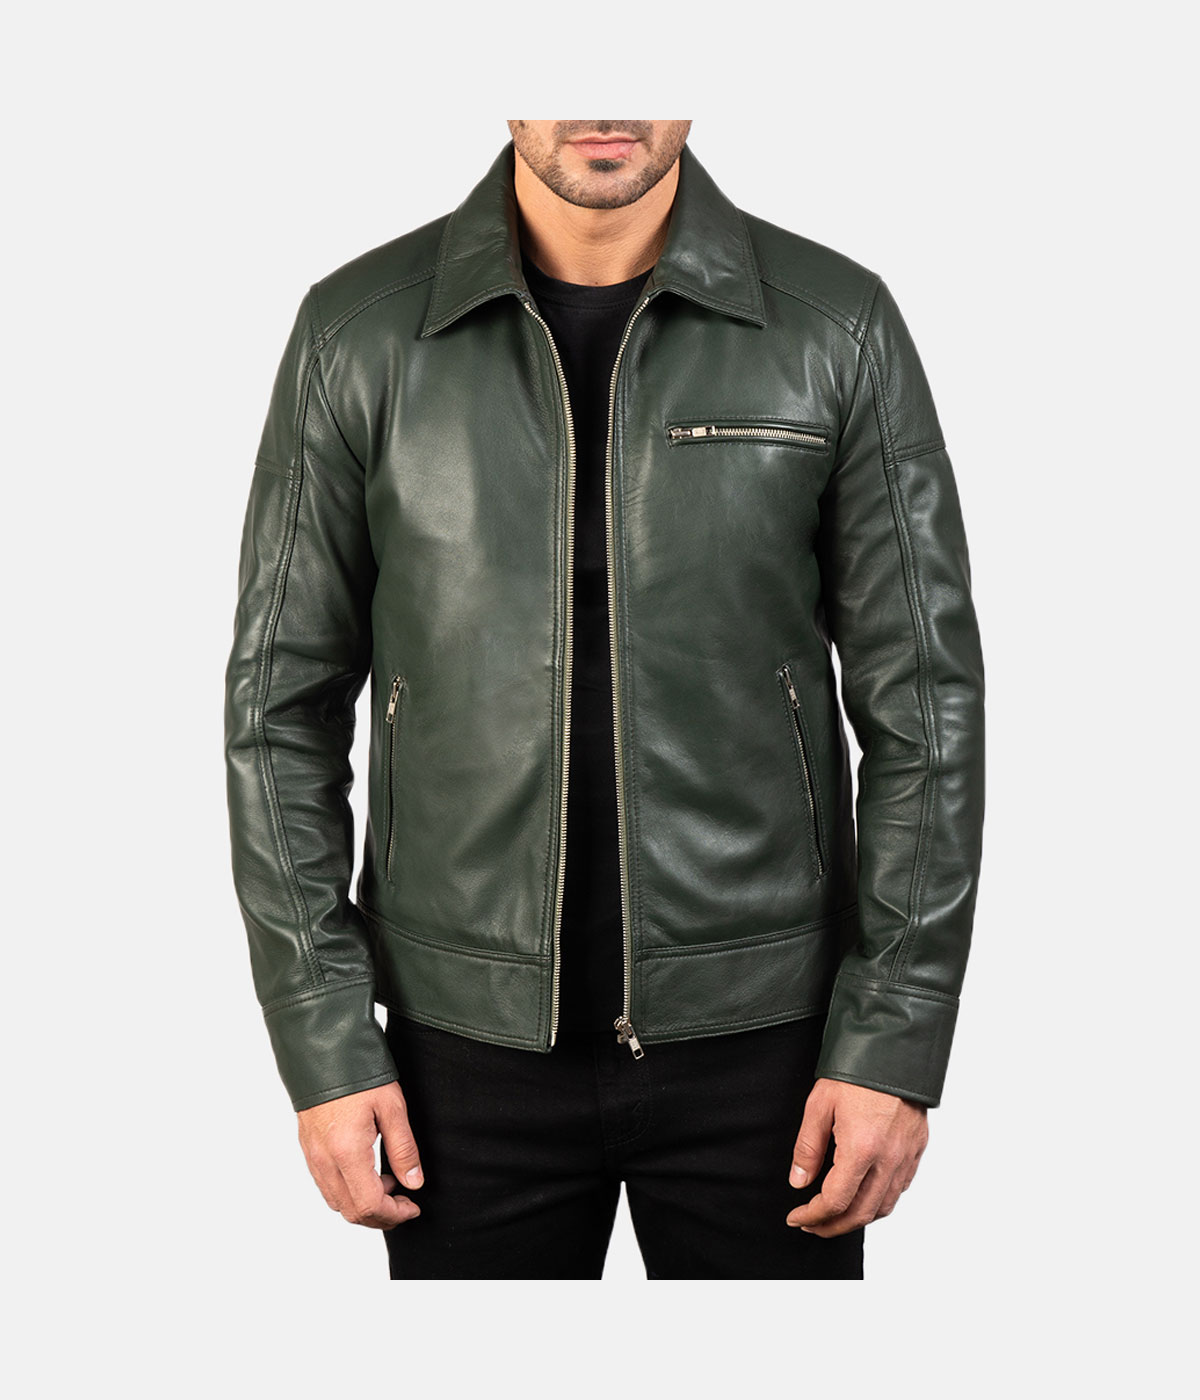 Men's Shirt Style Leather Jacket | Next Leather Jackets